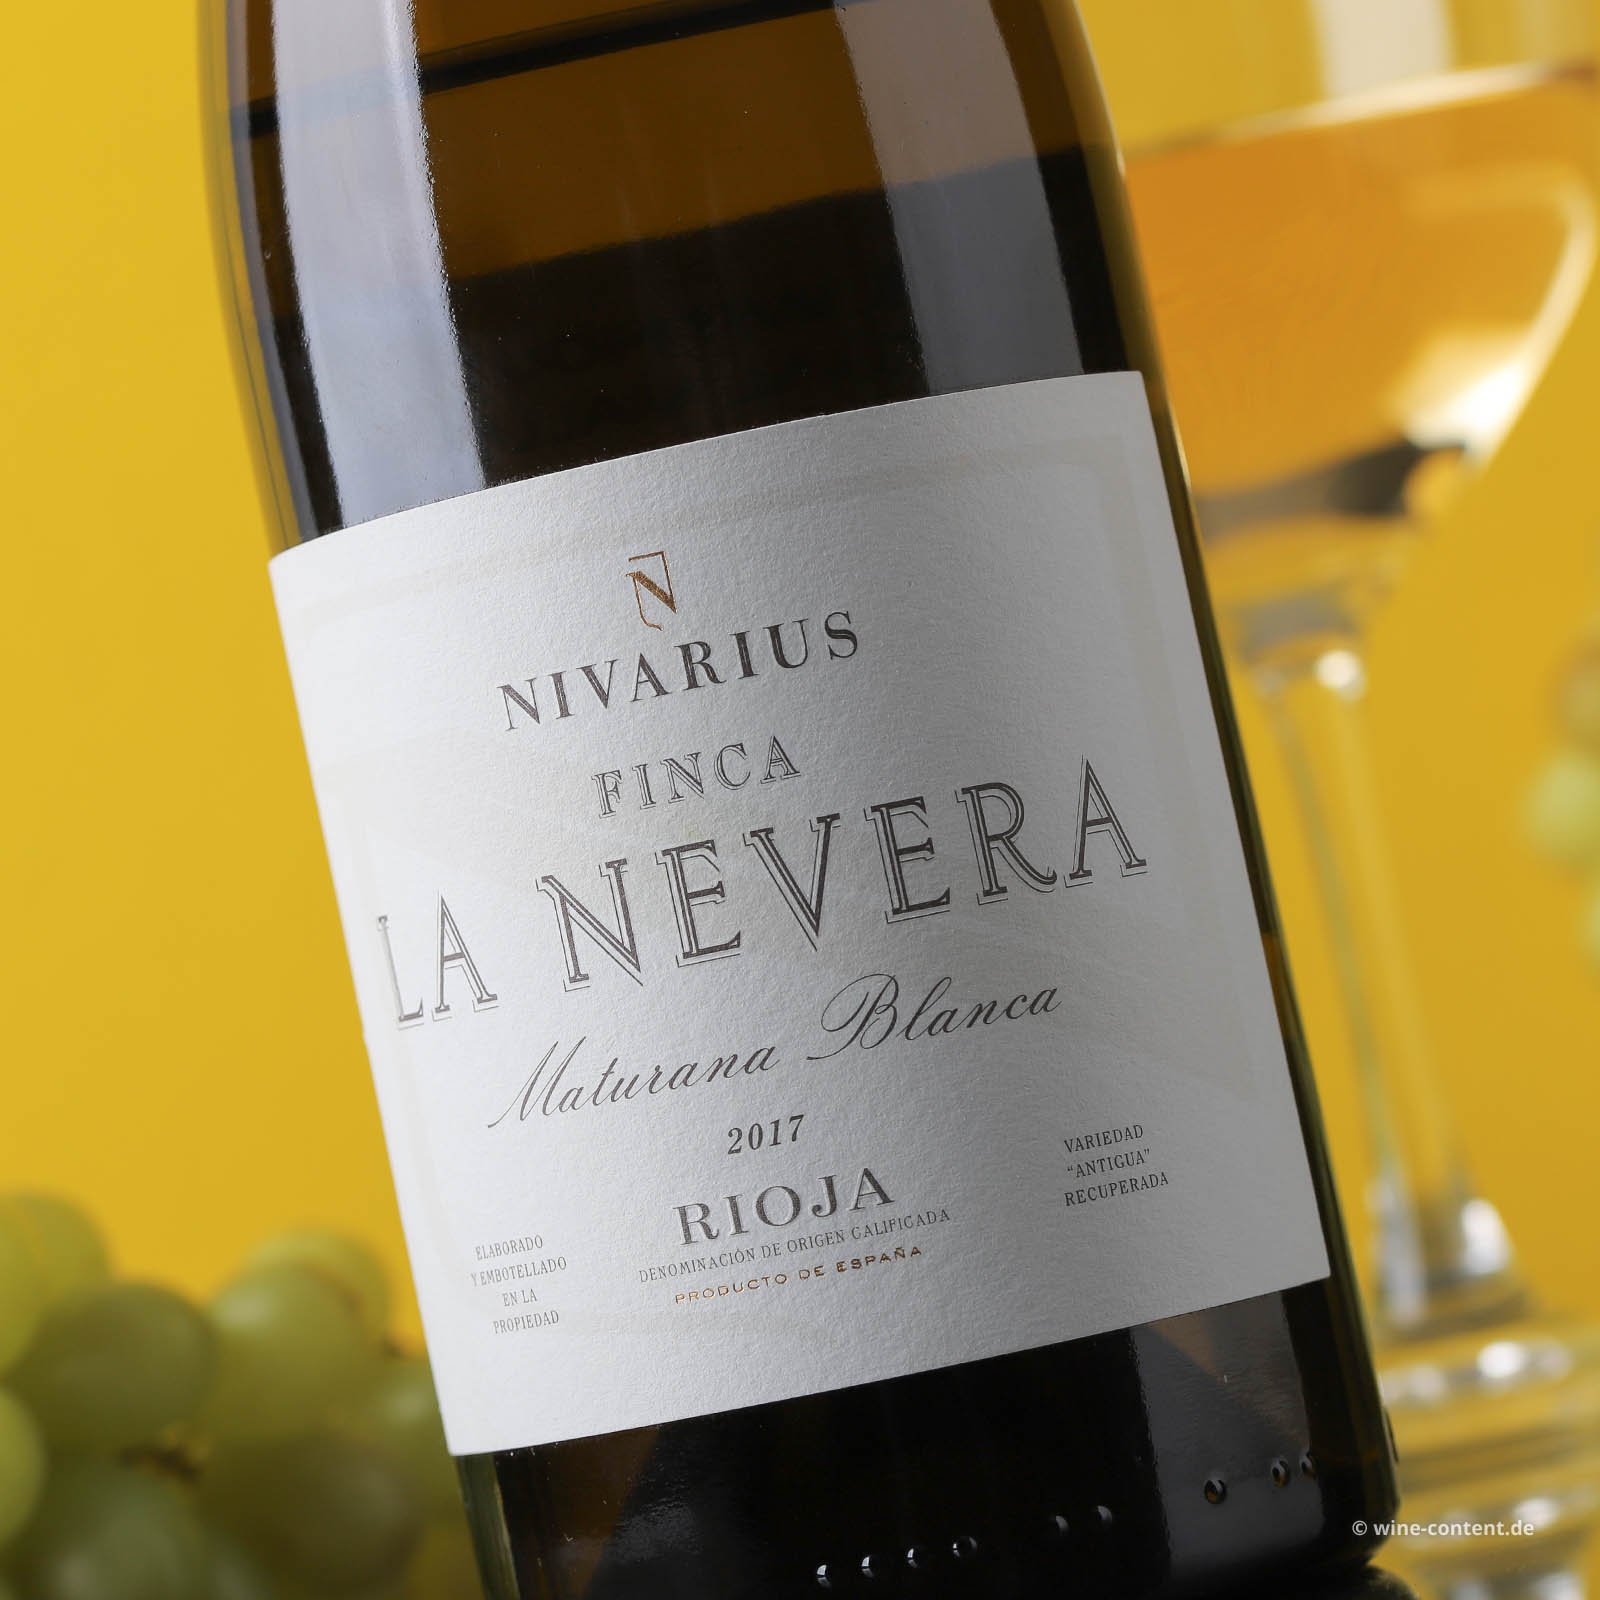 Rioja Blanco 2017 Finca La Nevera